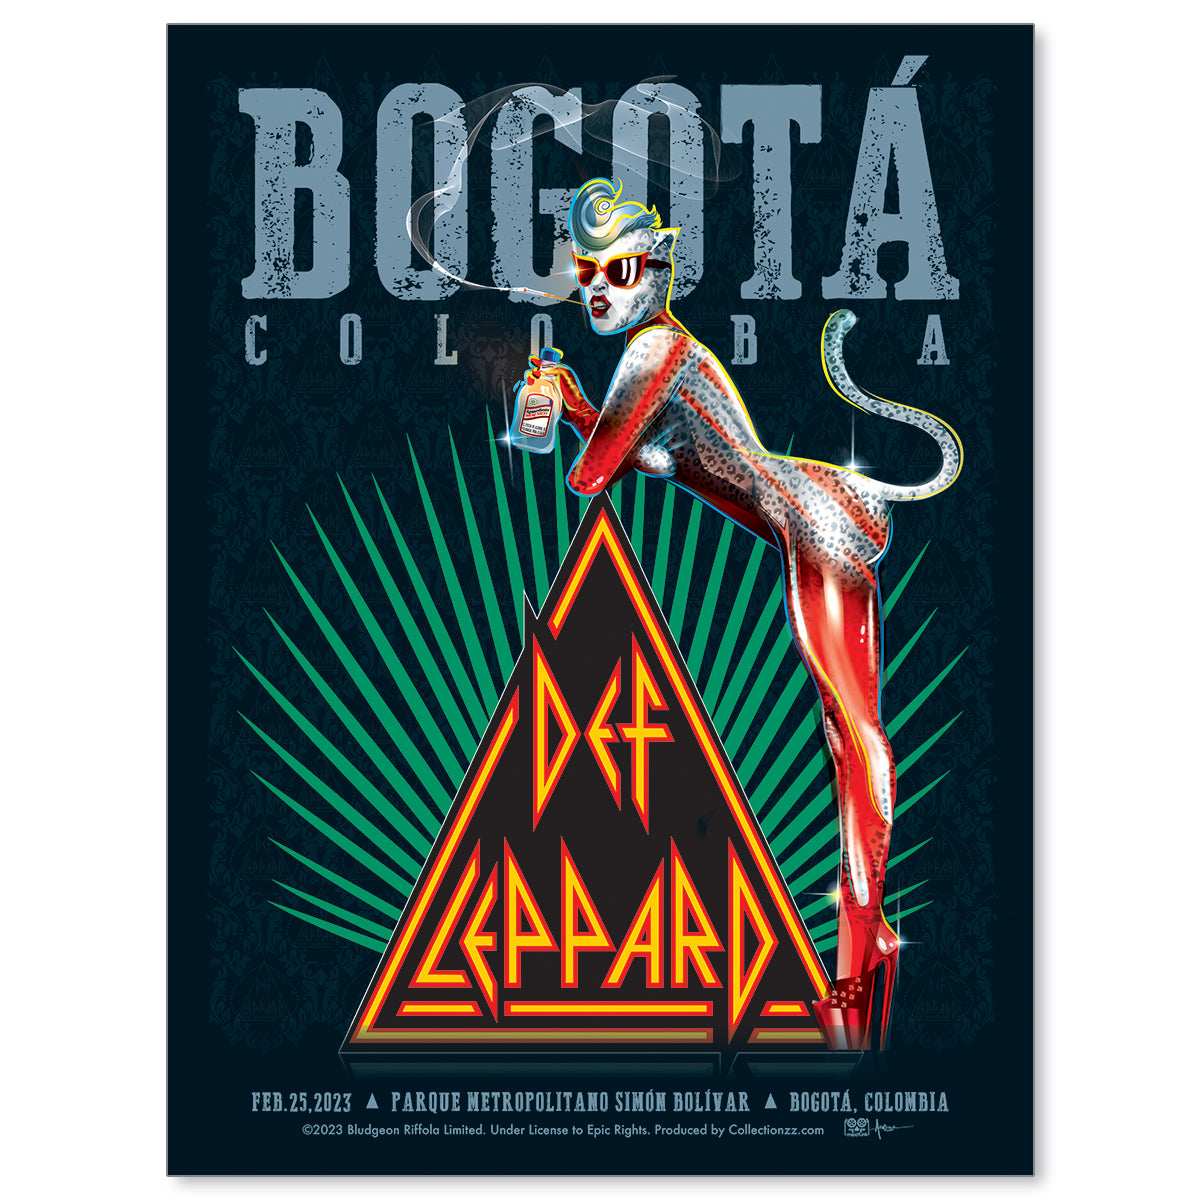 Def Leppard Bogota February 25, 2023 The World Tour